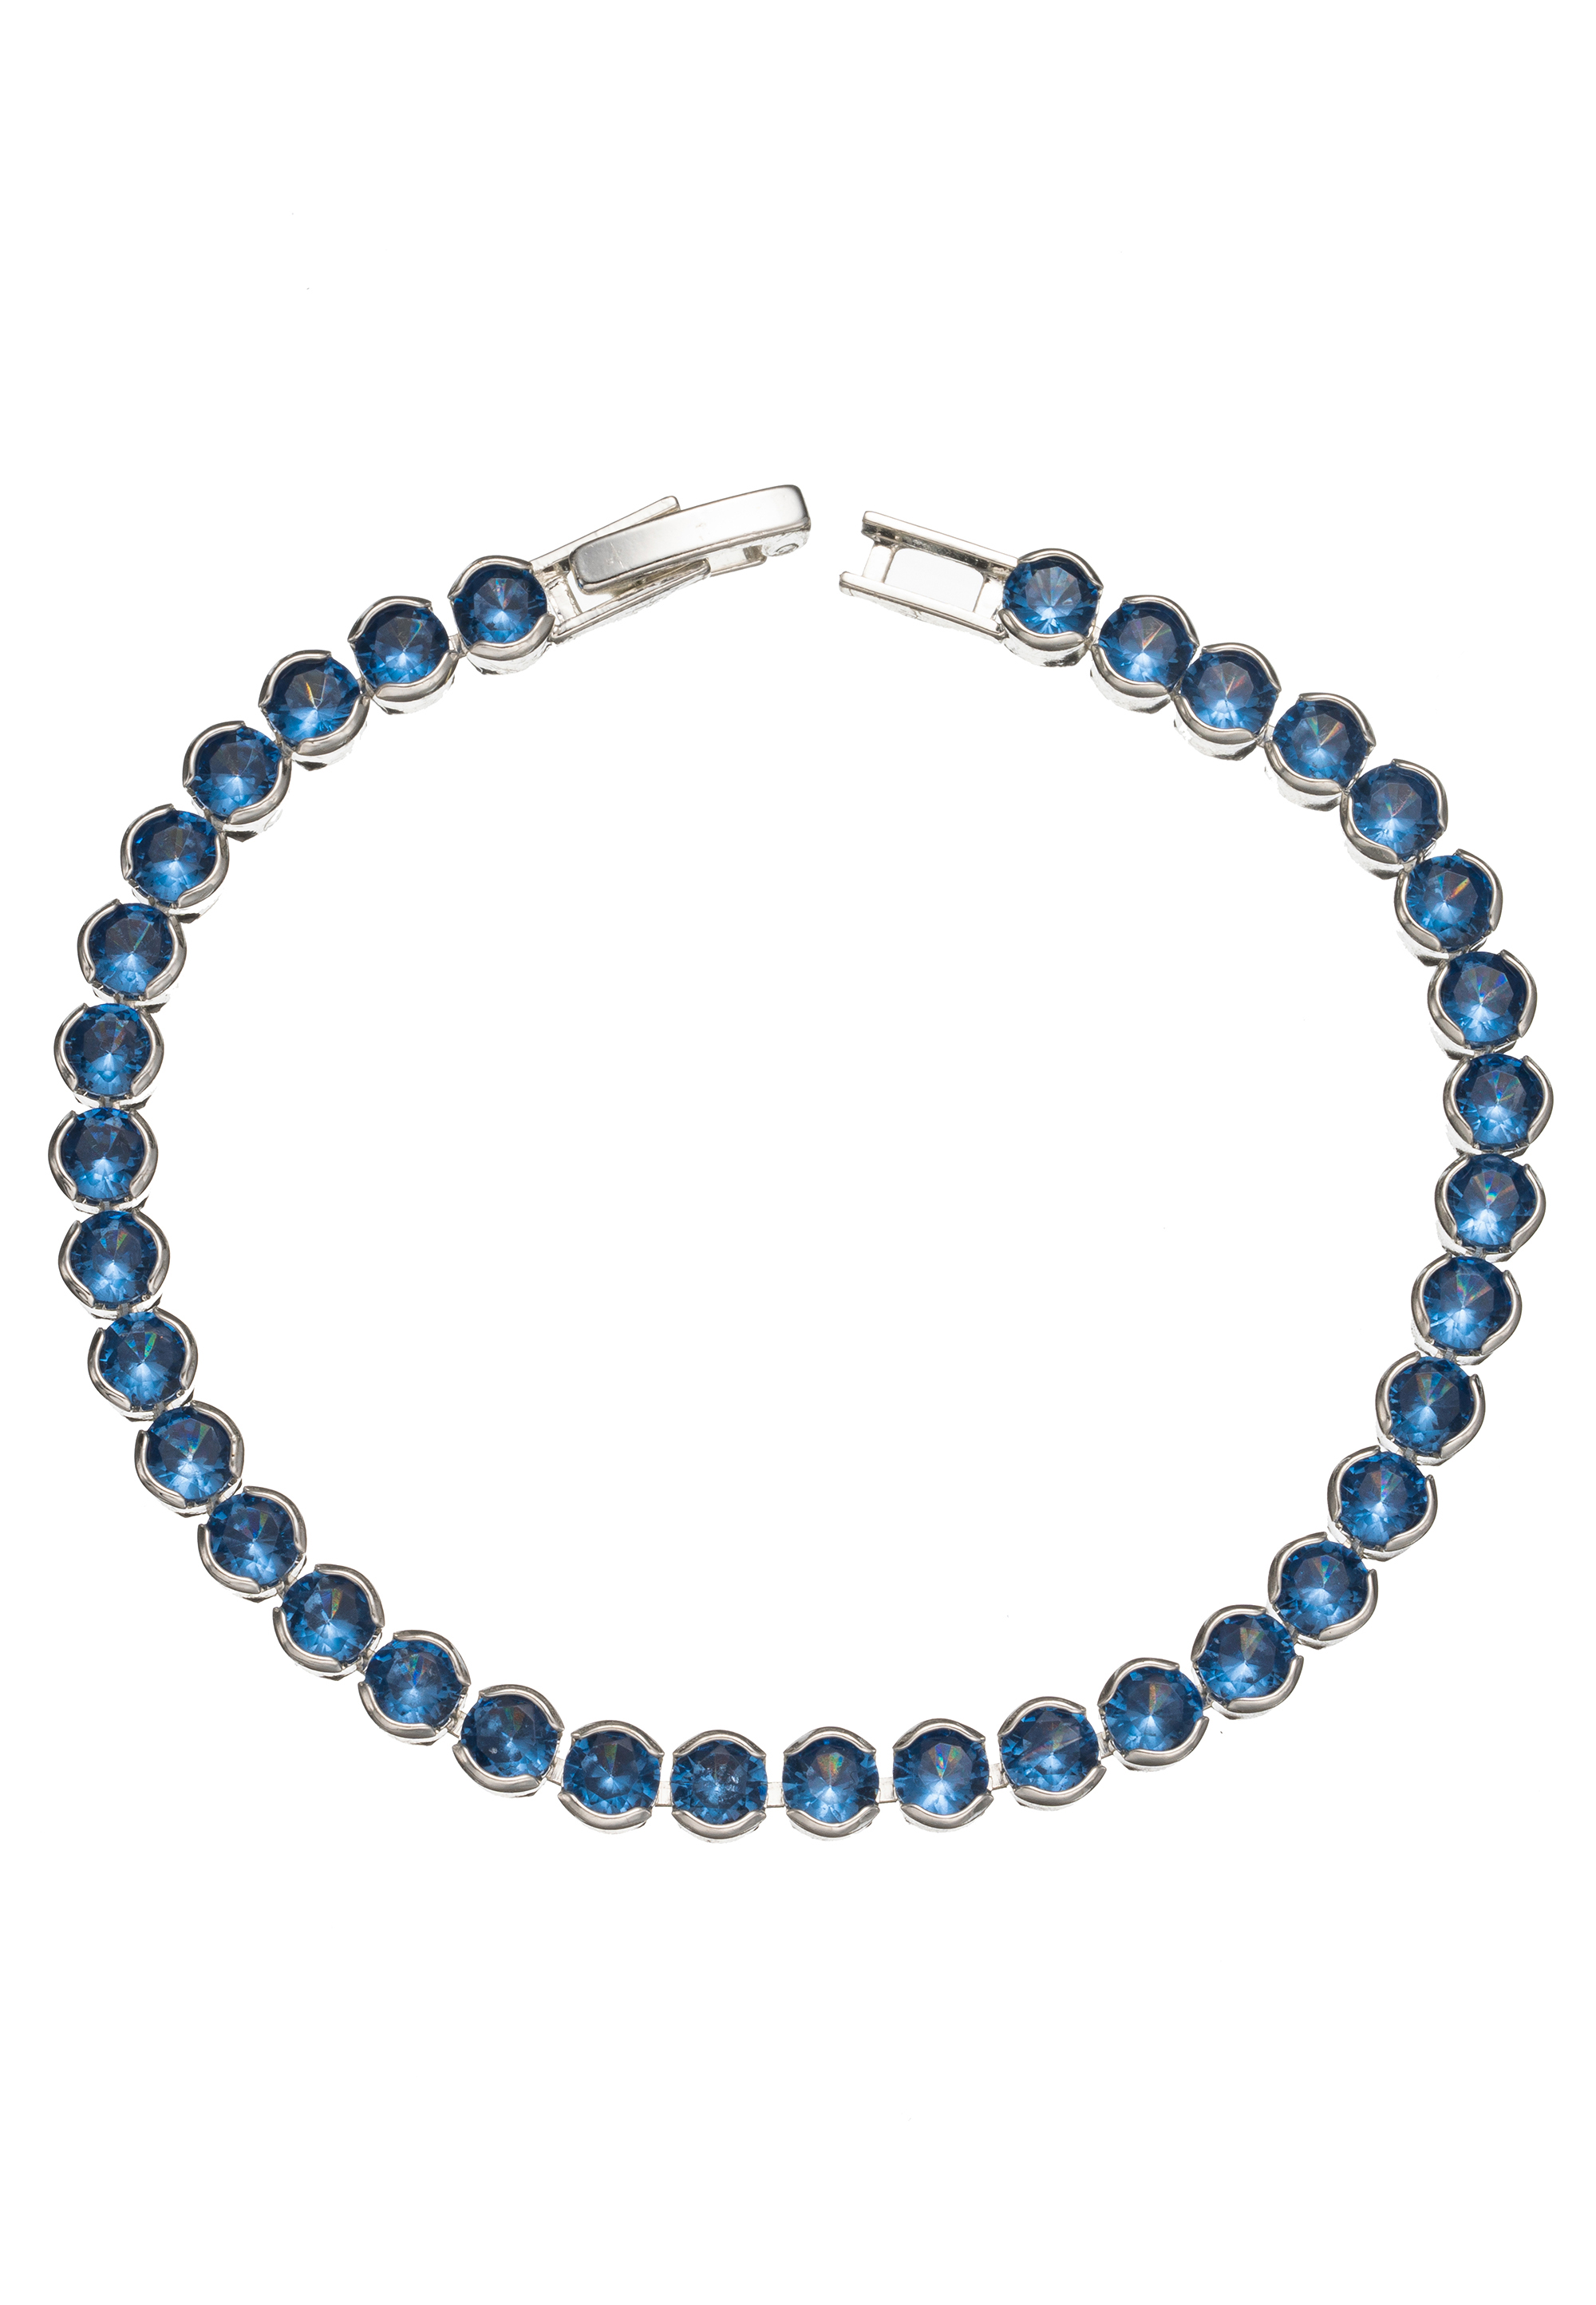 Leslii Armband Kristall blau glänzend | Online Shop Leslii